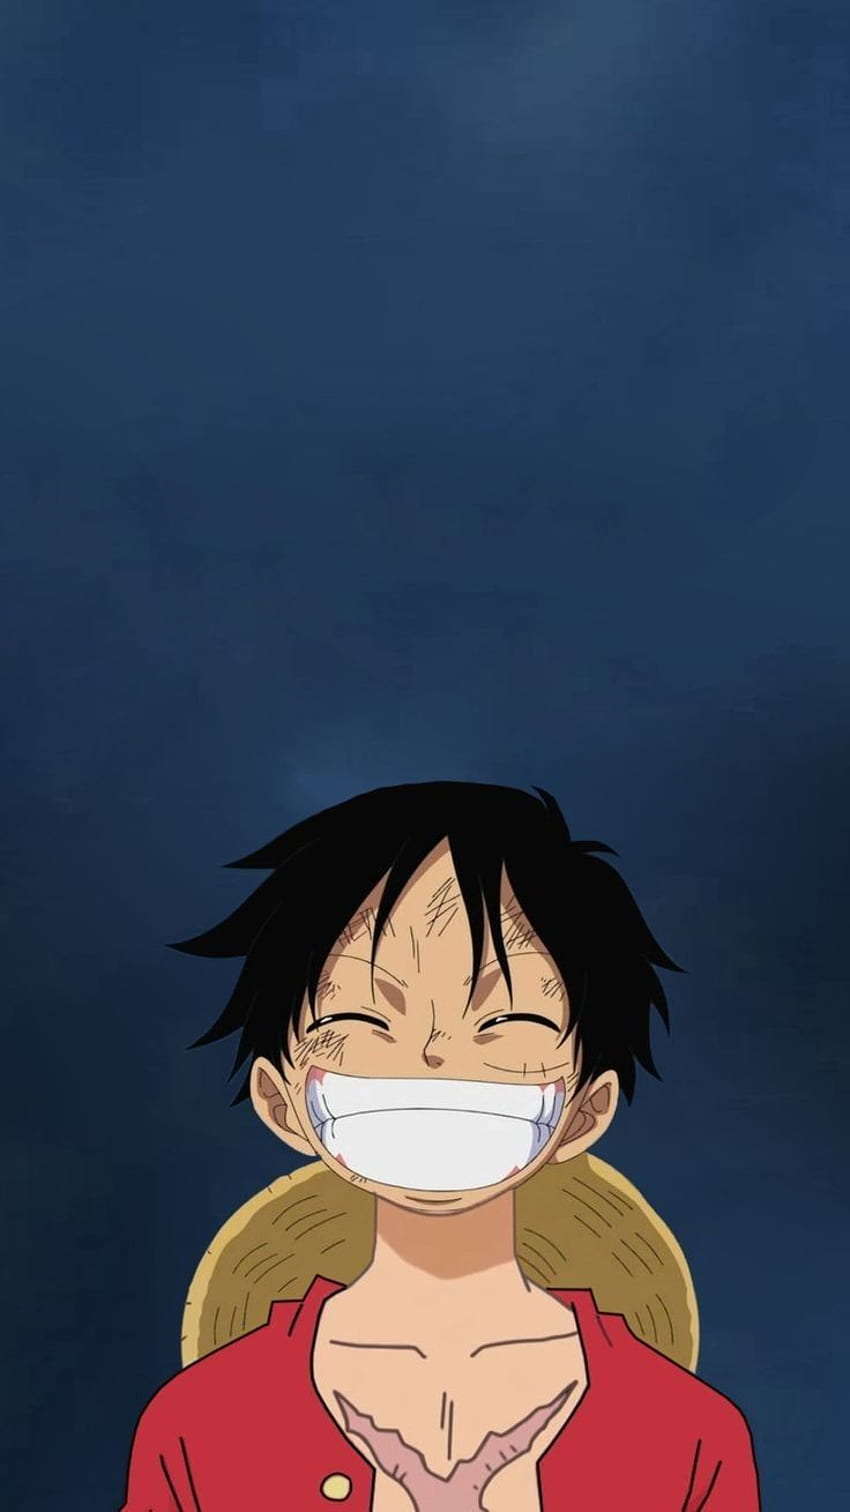 Nụ cười là vũ khí tuyệt đại giúp con người luôn vươn lên và nỗ lực. Luffy, nhân vật chính của One Piece, luôn biết cách tươi cười để cảm hứng và tích cực. Bạn muốn tìm kiếm một hình nền One Piece cùng nụ cười tươi tắn của Luffy để truyền tải thông điệp tích cực? Hãy đến với chúng tôi, chắc chắn bạn sẽ không thất vọng!